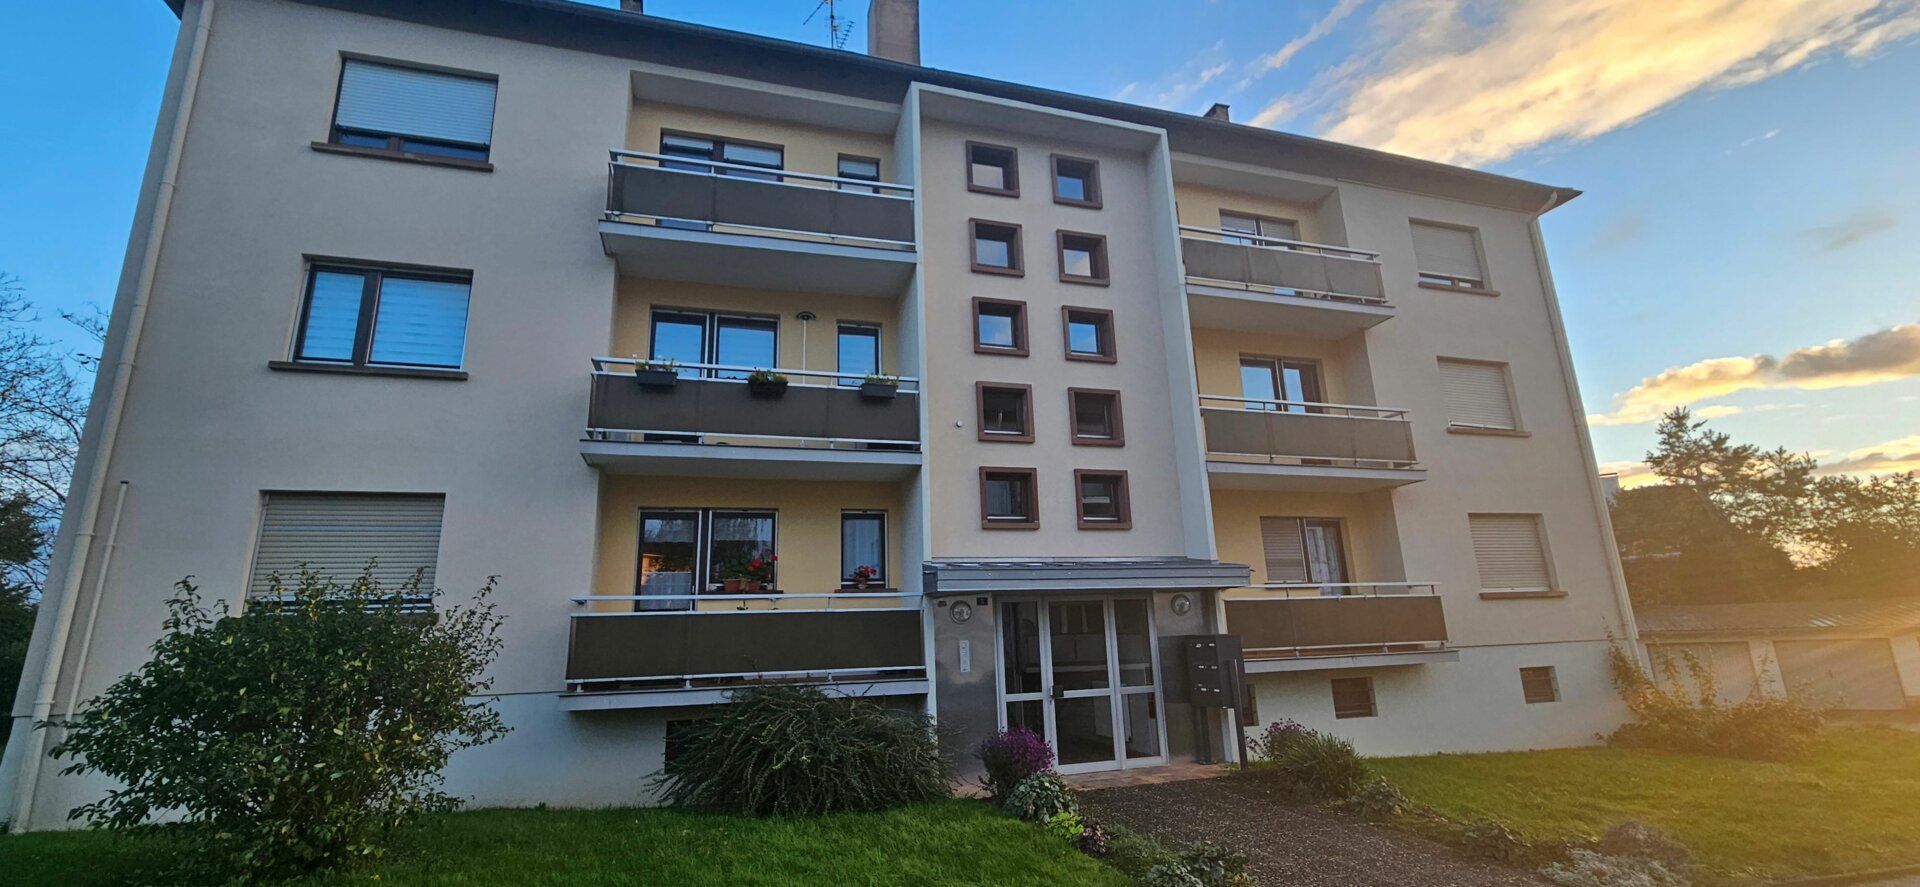 Appartement à vendre 3 80m2 à Sarre-Union vignette-1